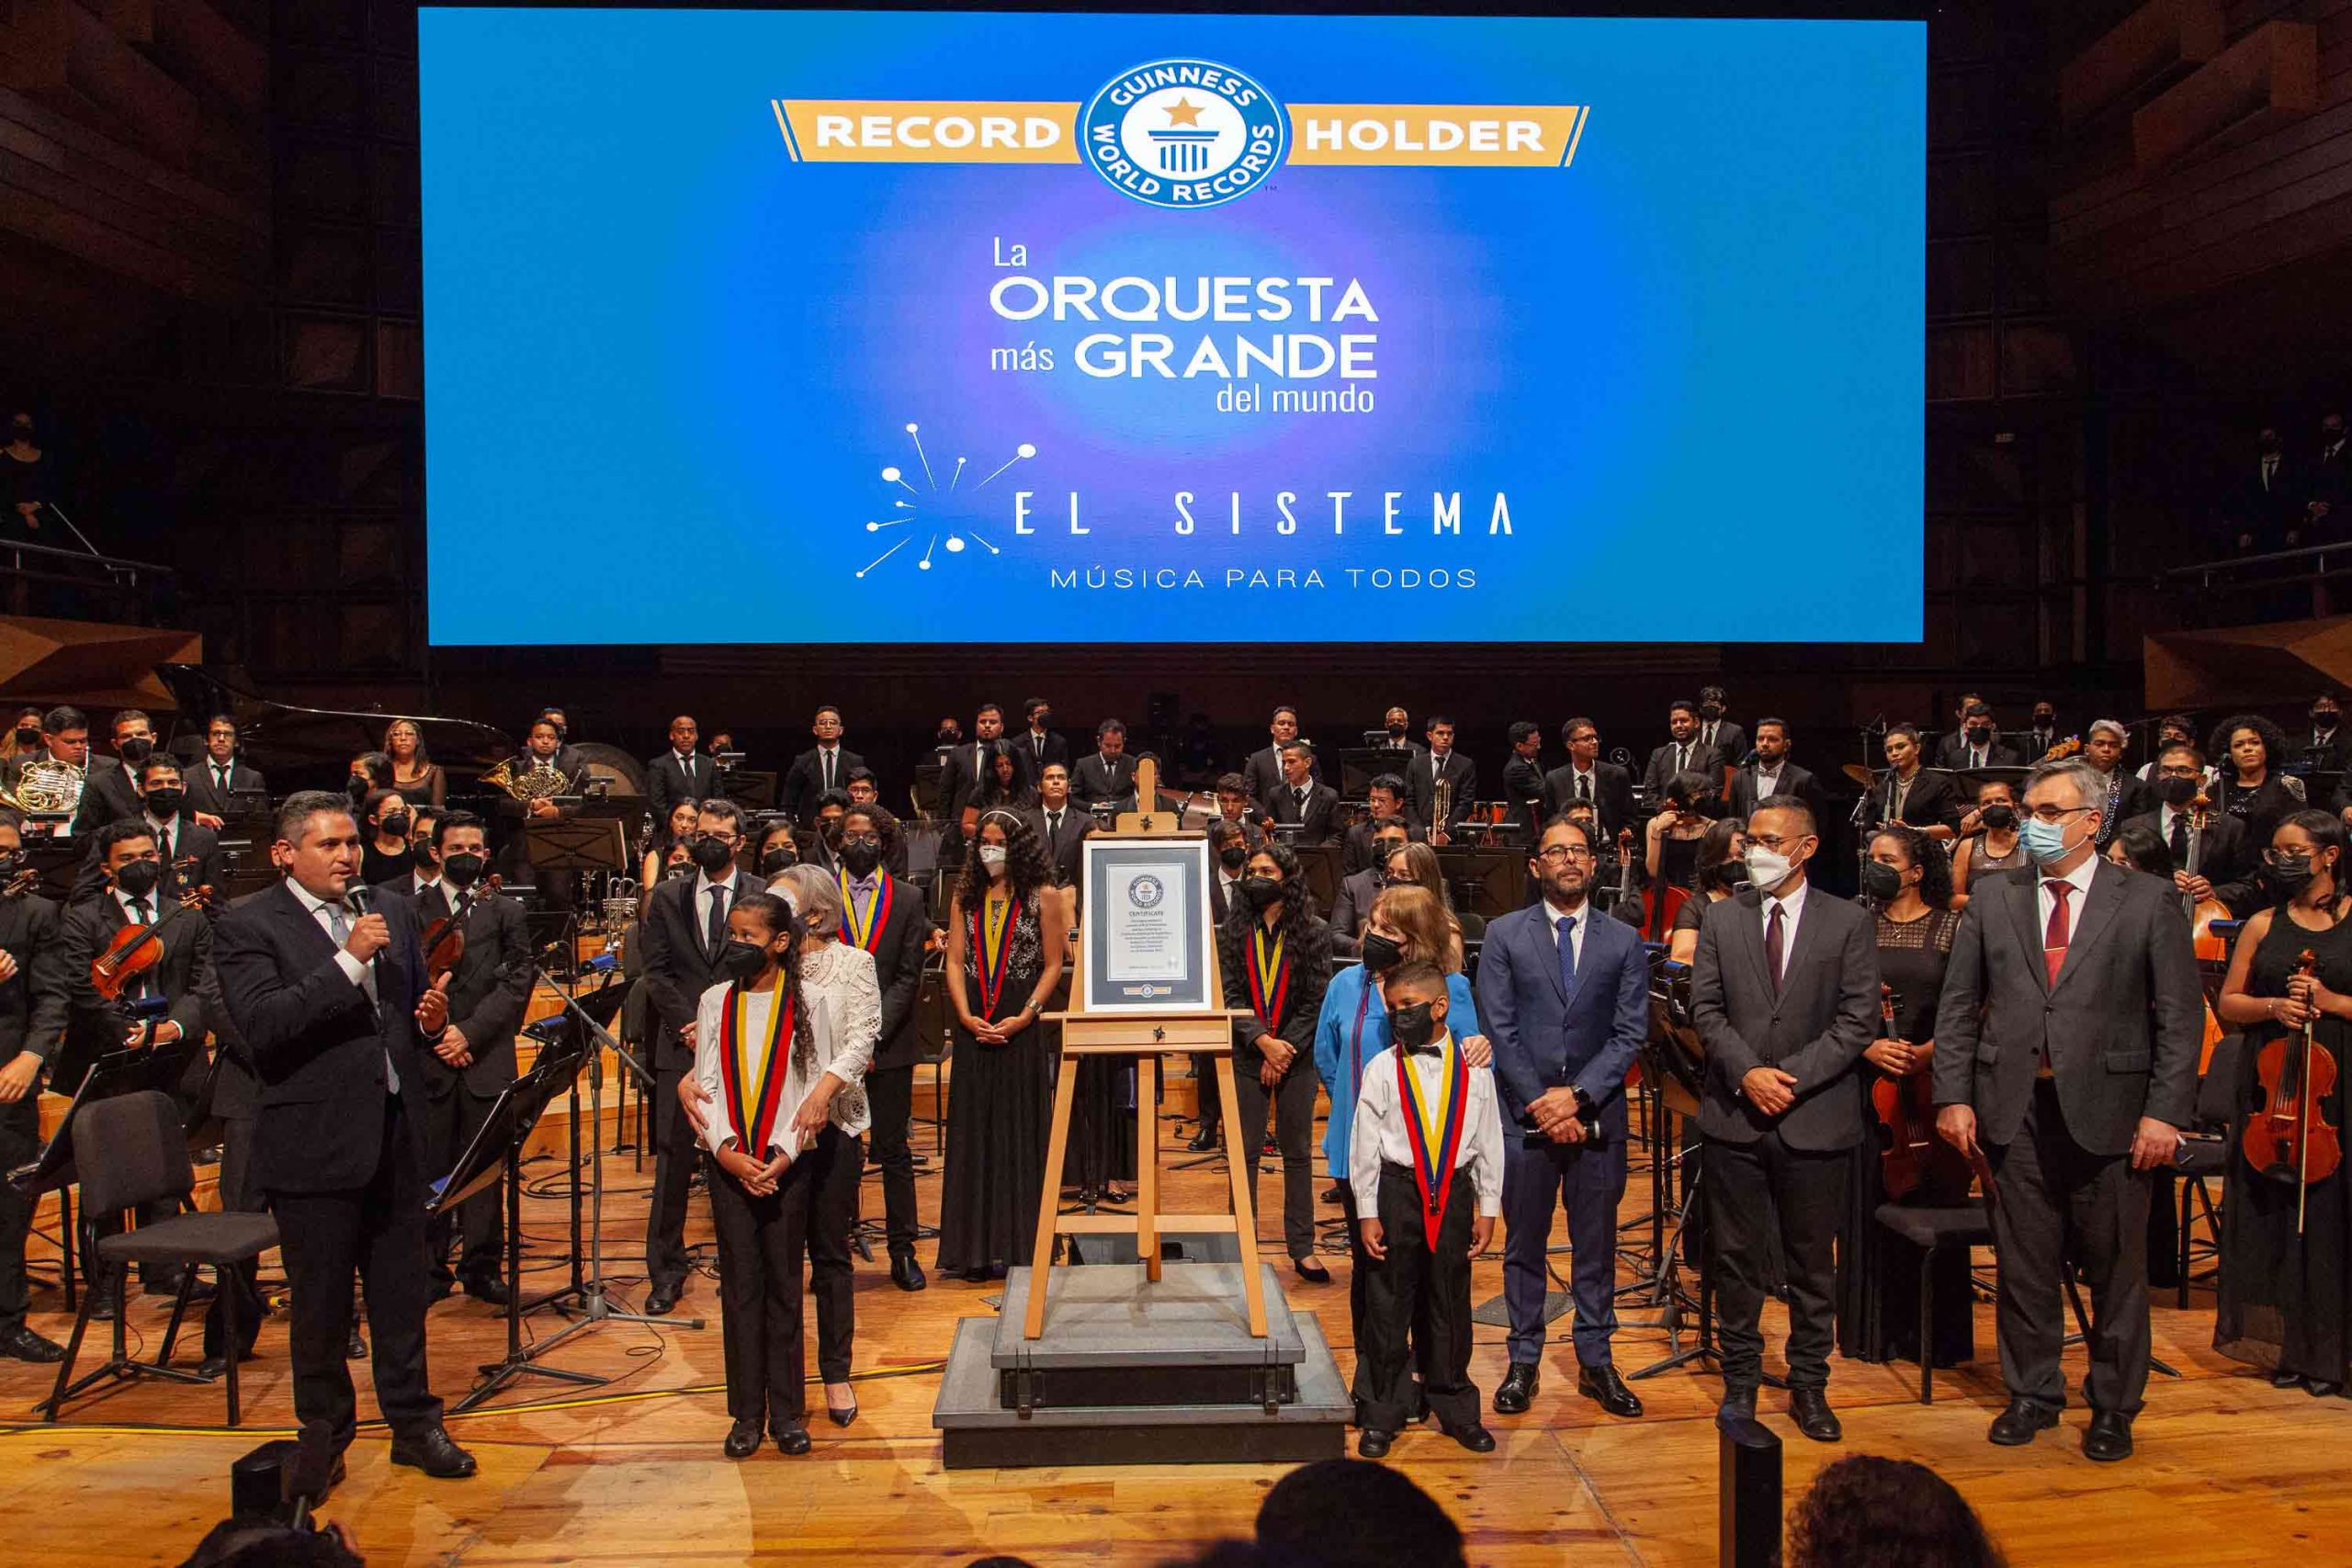 Celebramos El Anuncio Oficial Del Guinness World Records De La Orquesta Más Grande Del Mundo A Venezuela Y El Sistema